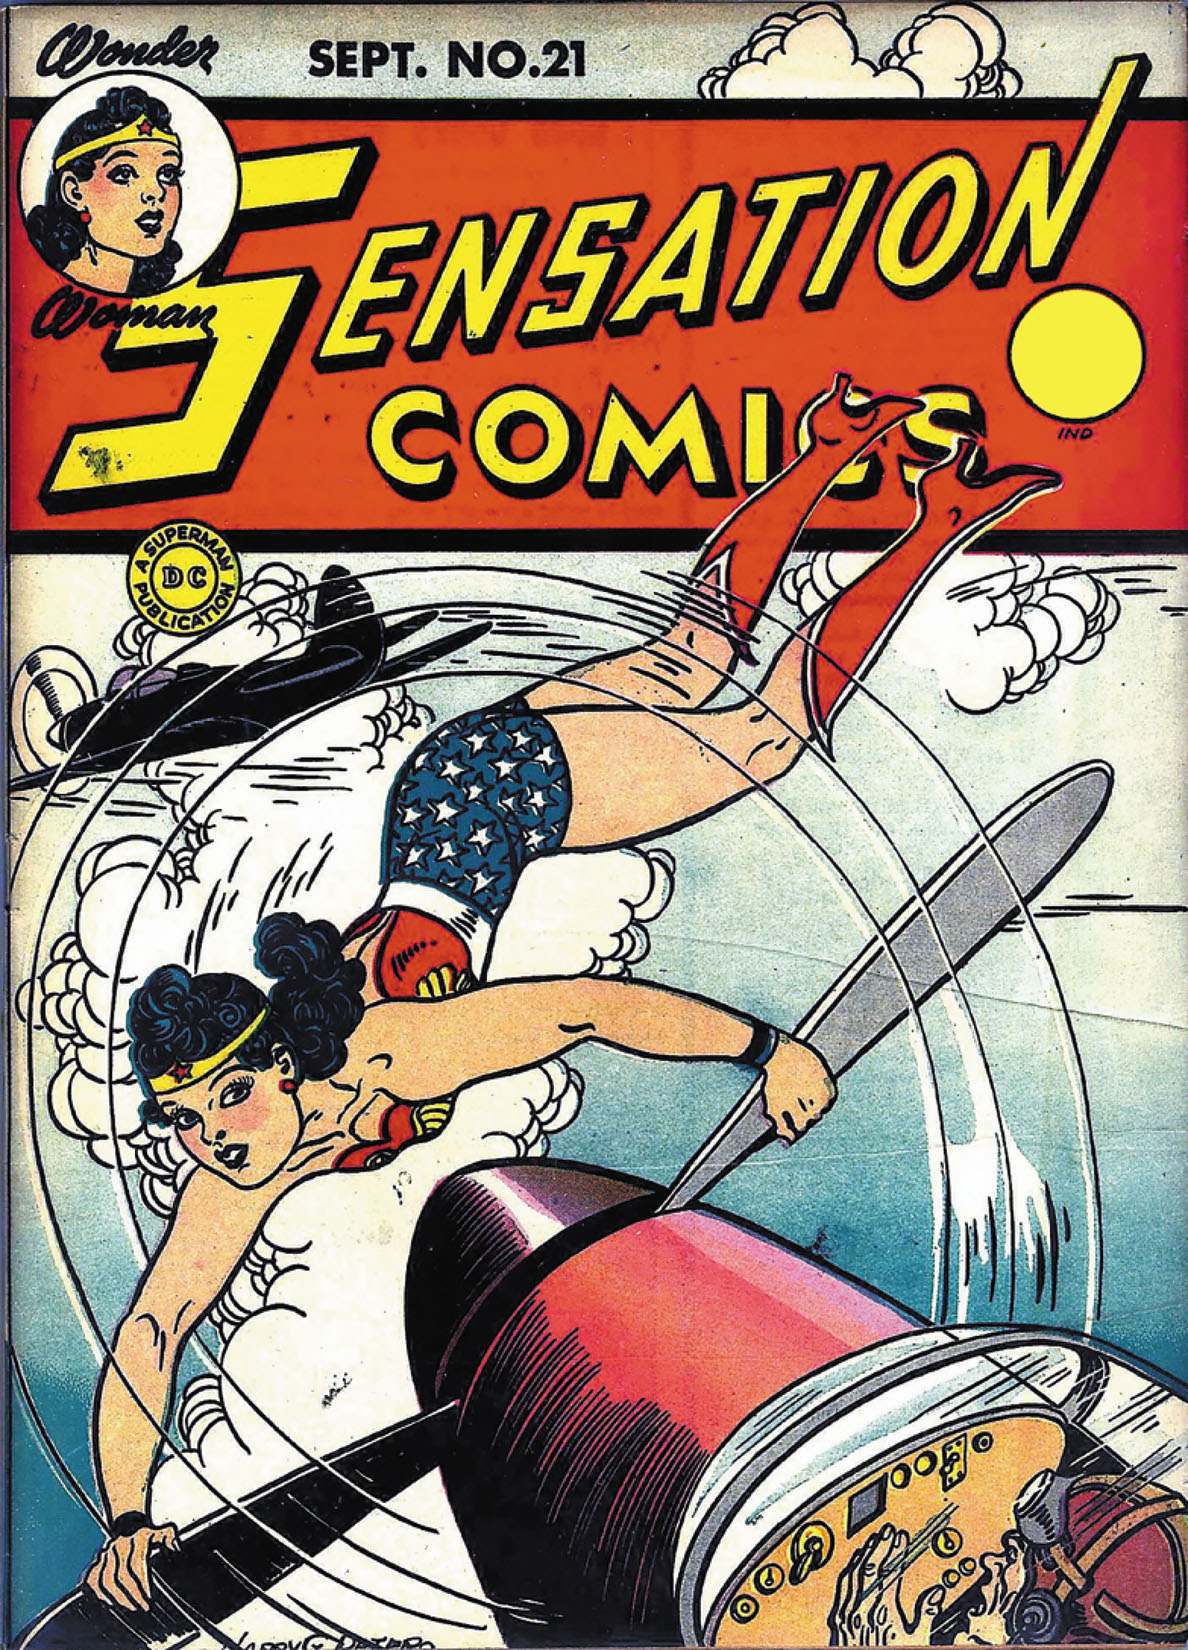 Sensation Comics #21 preview images